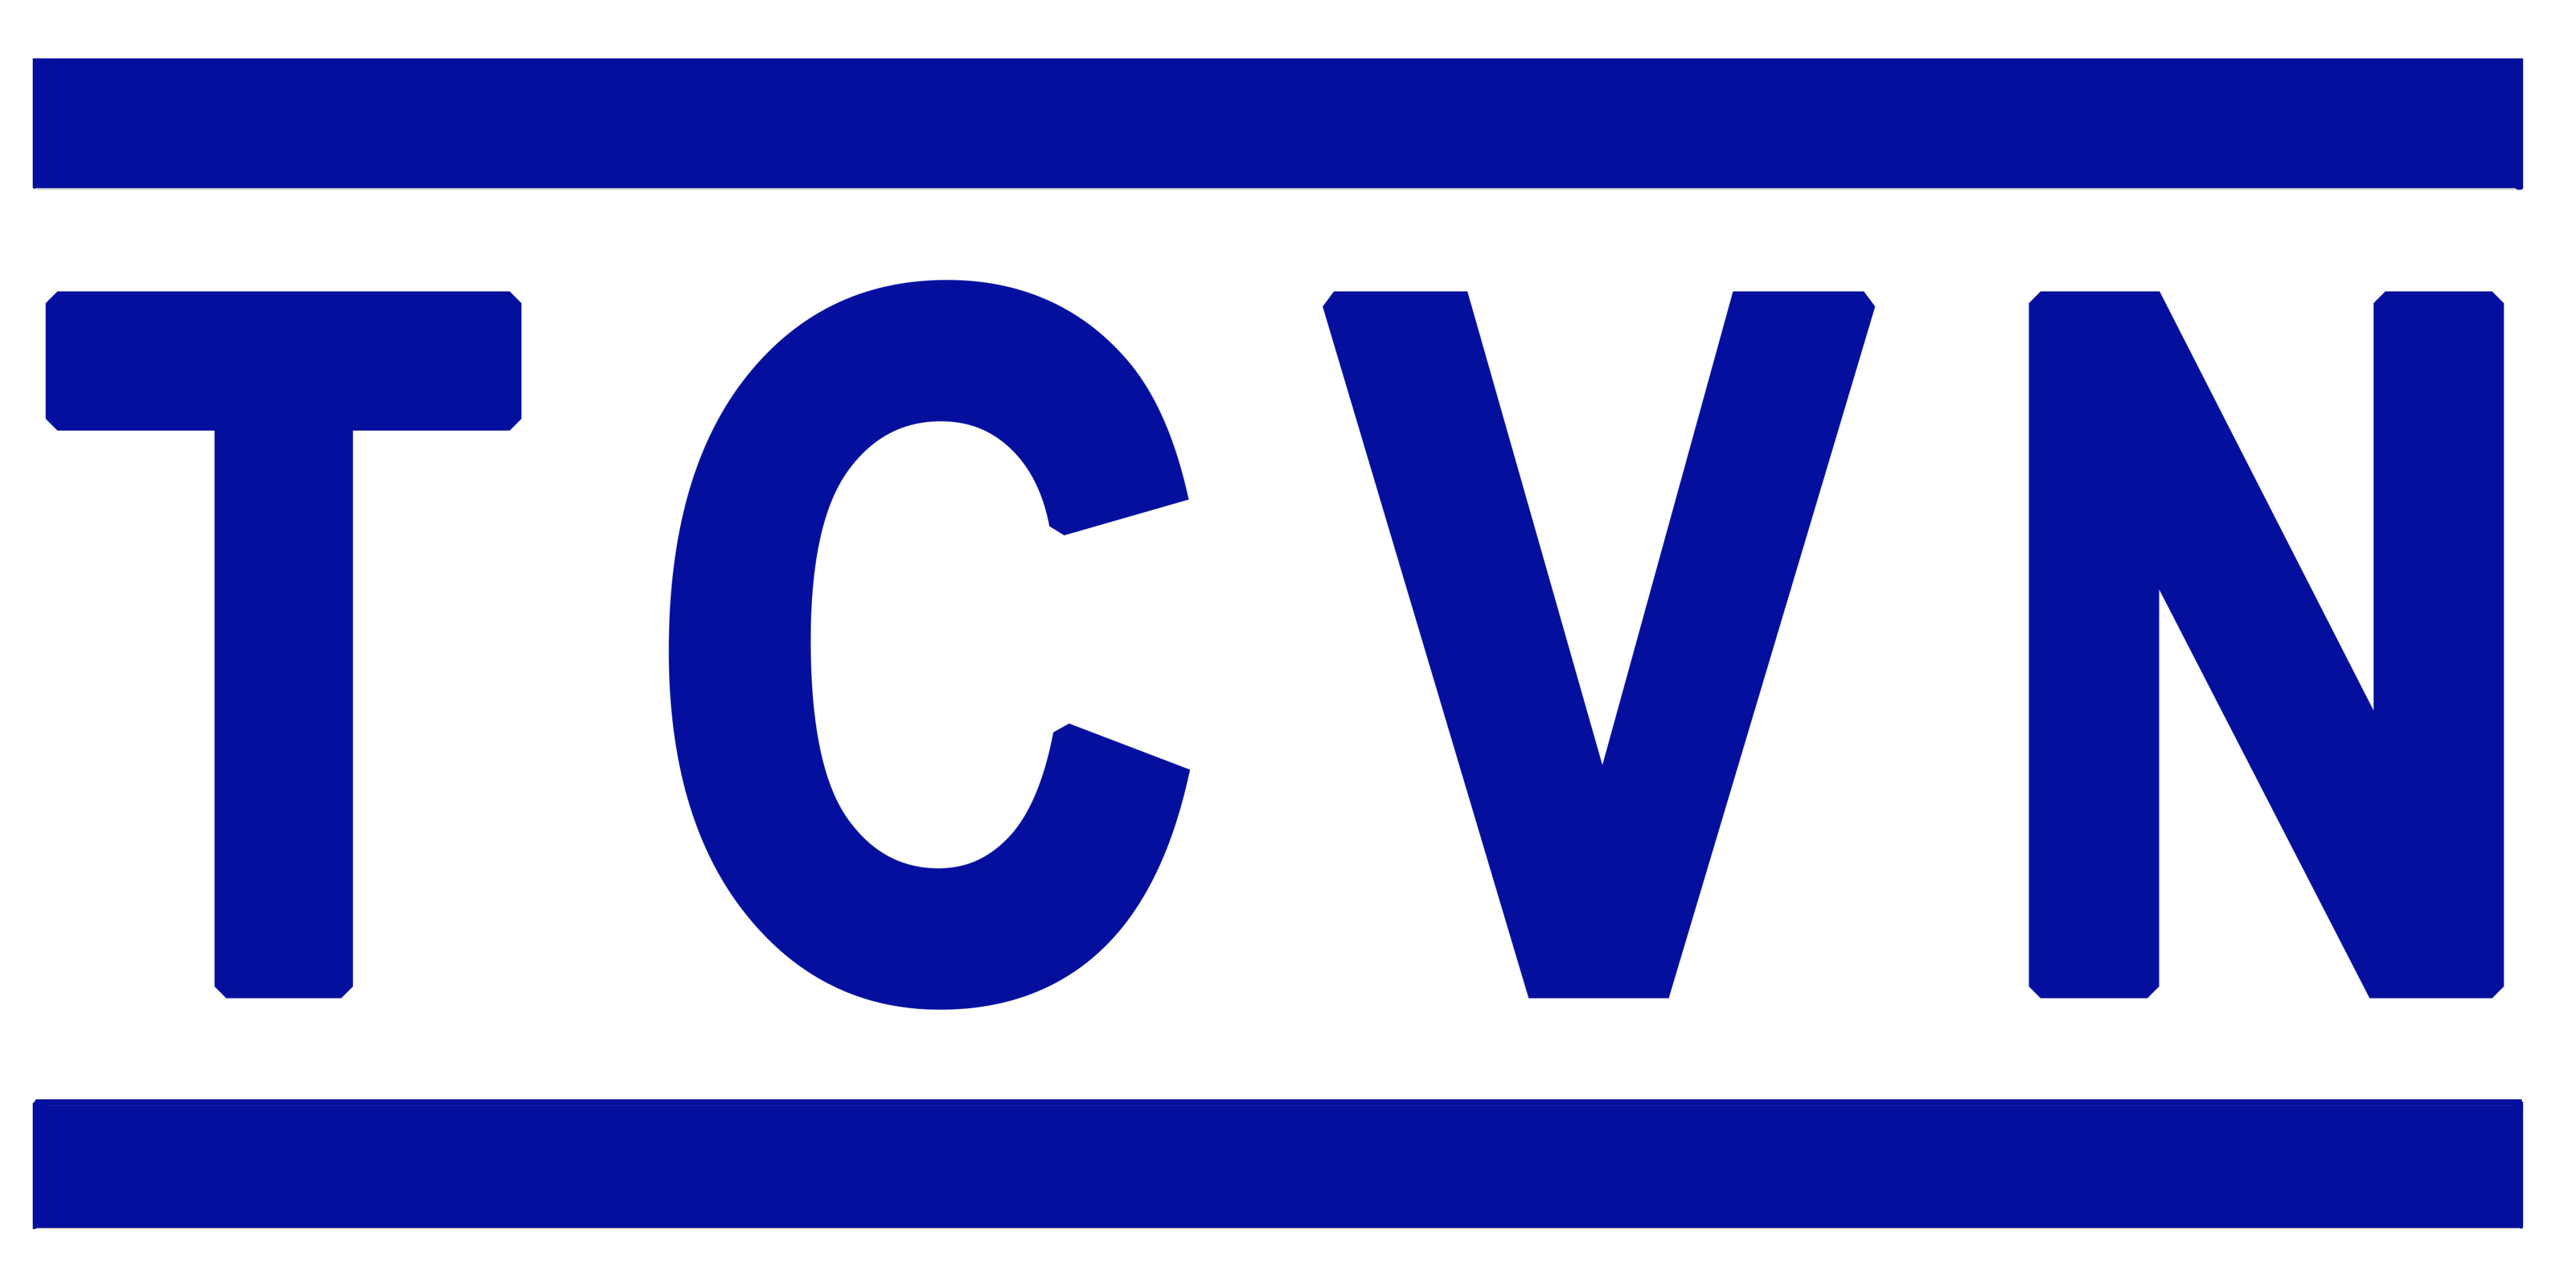 Danh mục tiêu chuẩn Quốc Gia (TCVN) công bố tháng 11 năm 2019